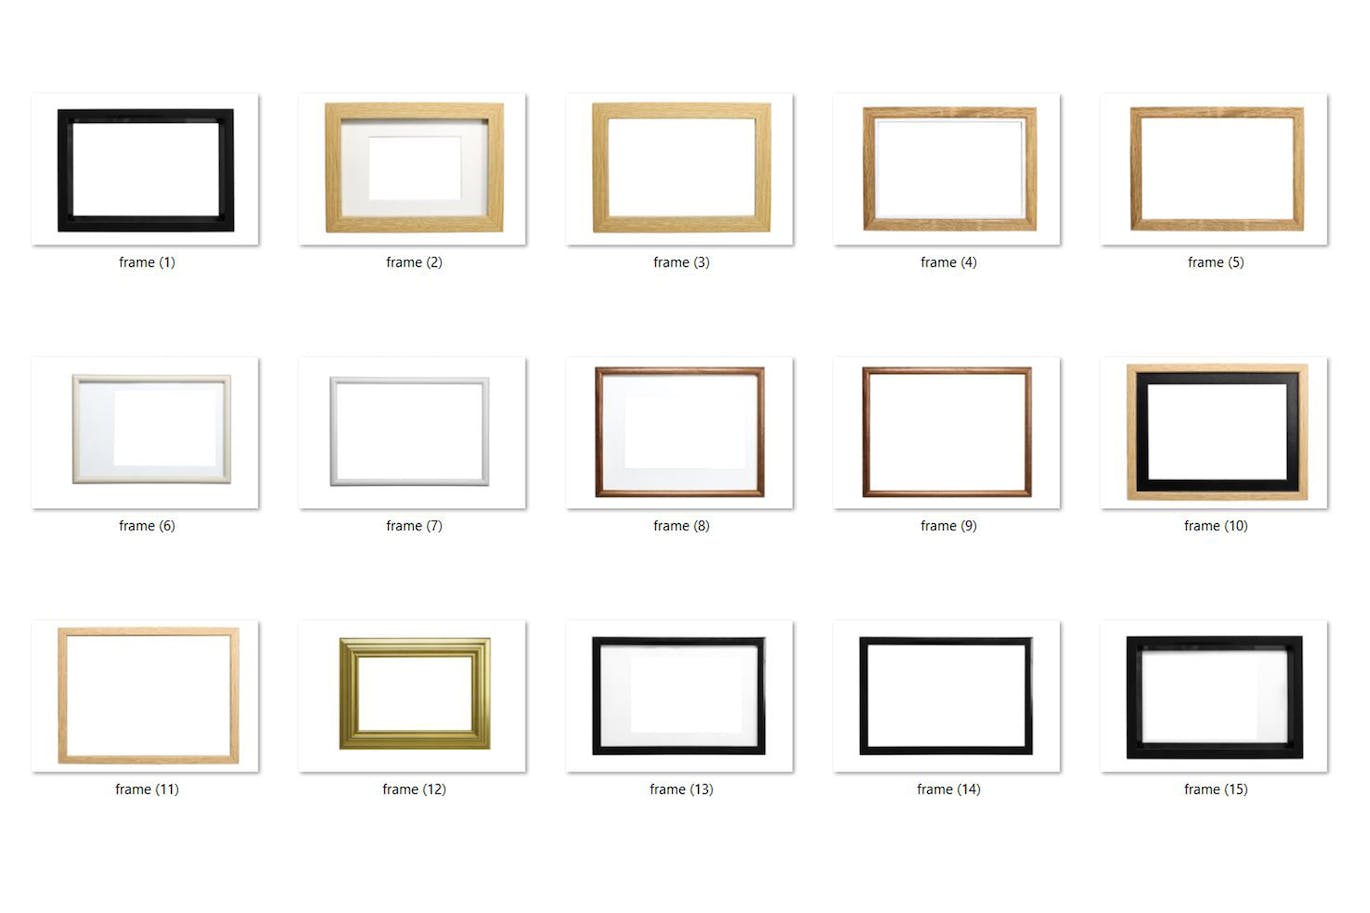 15个相框照片叠层素材 15 Photo Frames Overlays HQ 样机素材 第2张